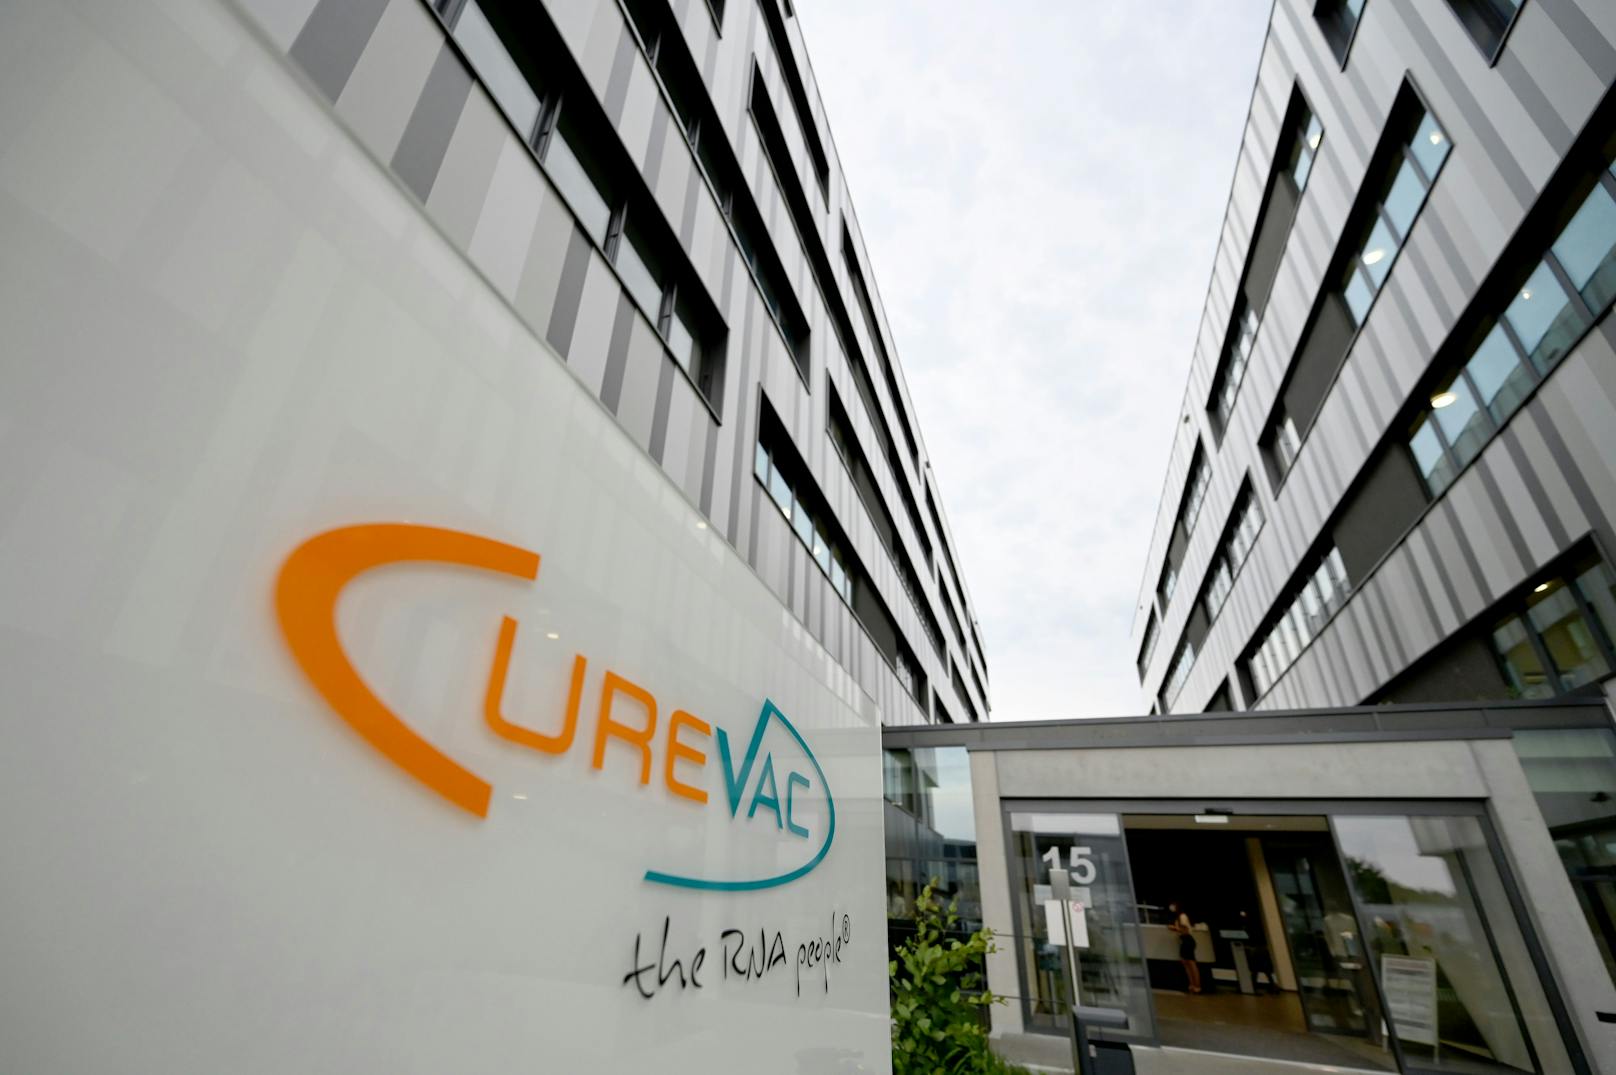 Curevac setzt, wie das Mainzer Unternehmen Biontech, auf einen modernen mRNA-Impfstoff.